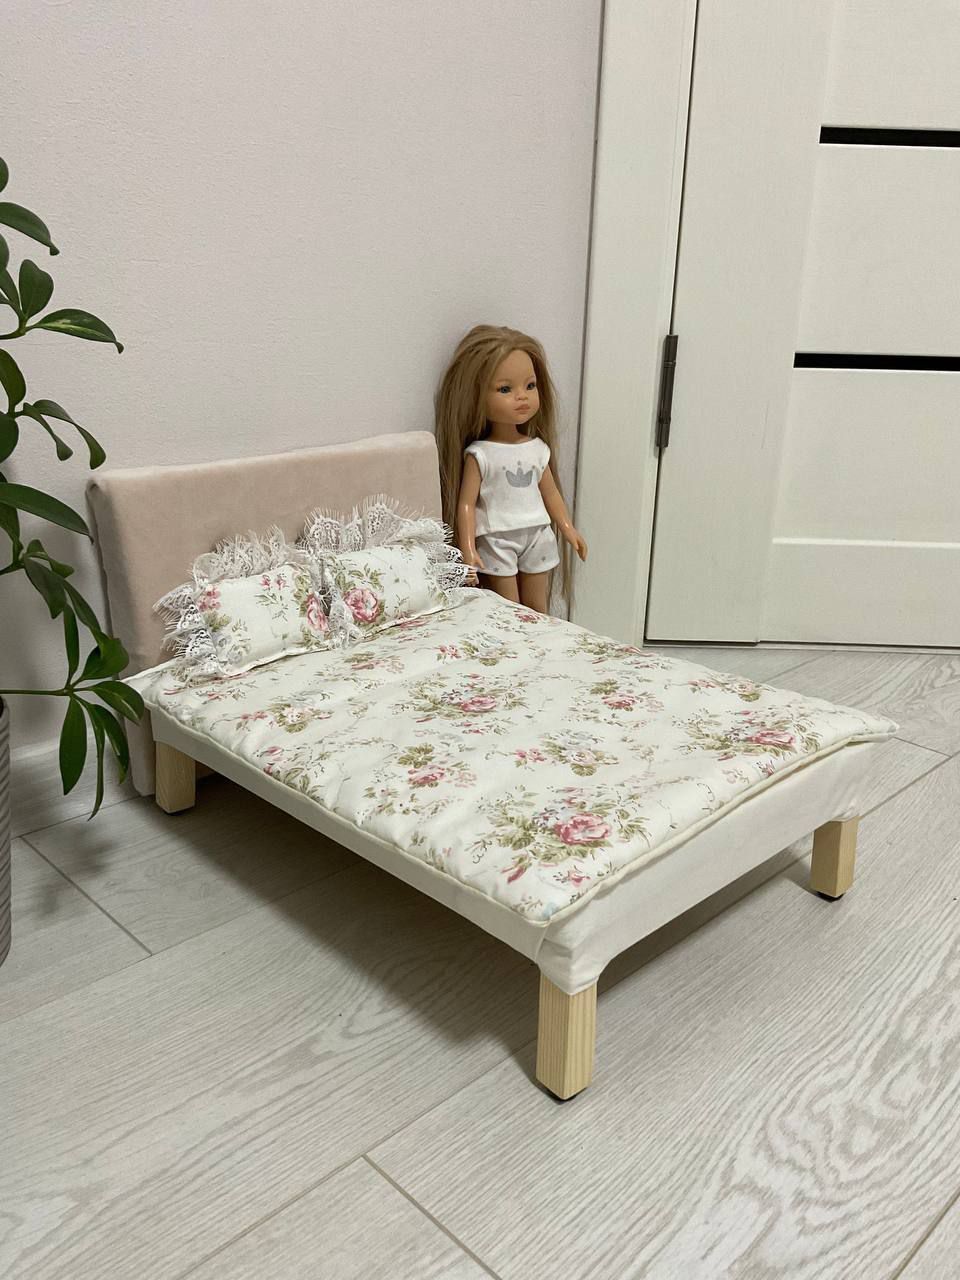 Ліжко для ляльки до 38 см типу Paola Reina, Barbie та інш.Ручна робота